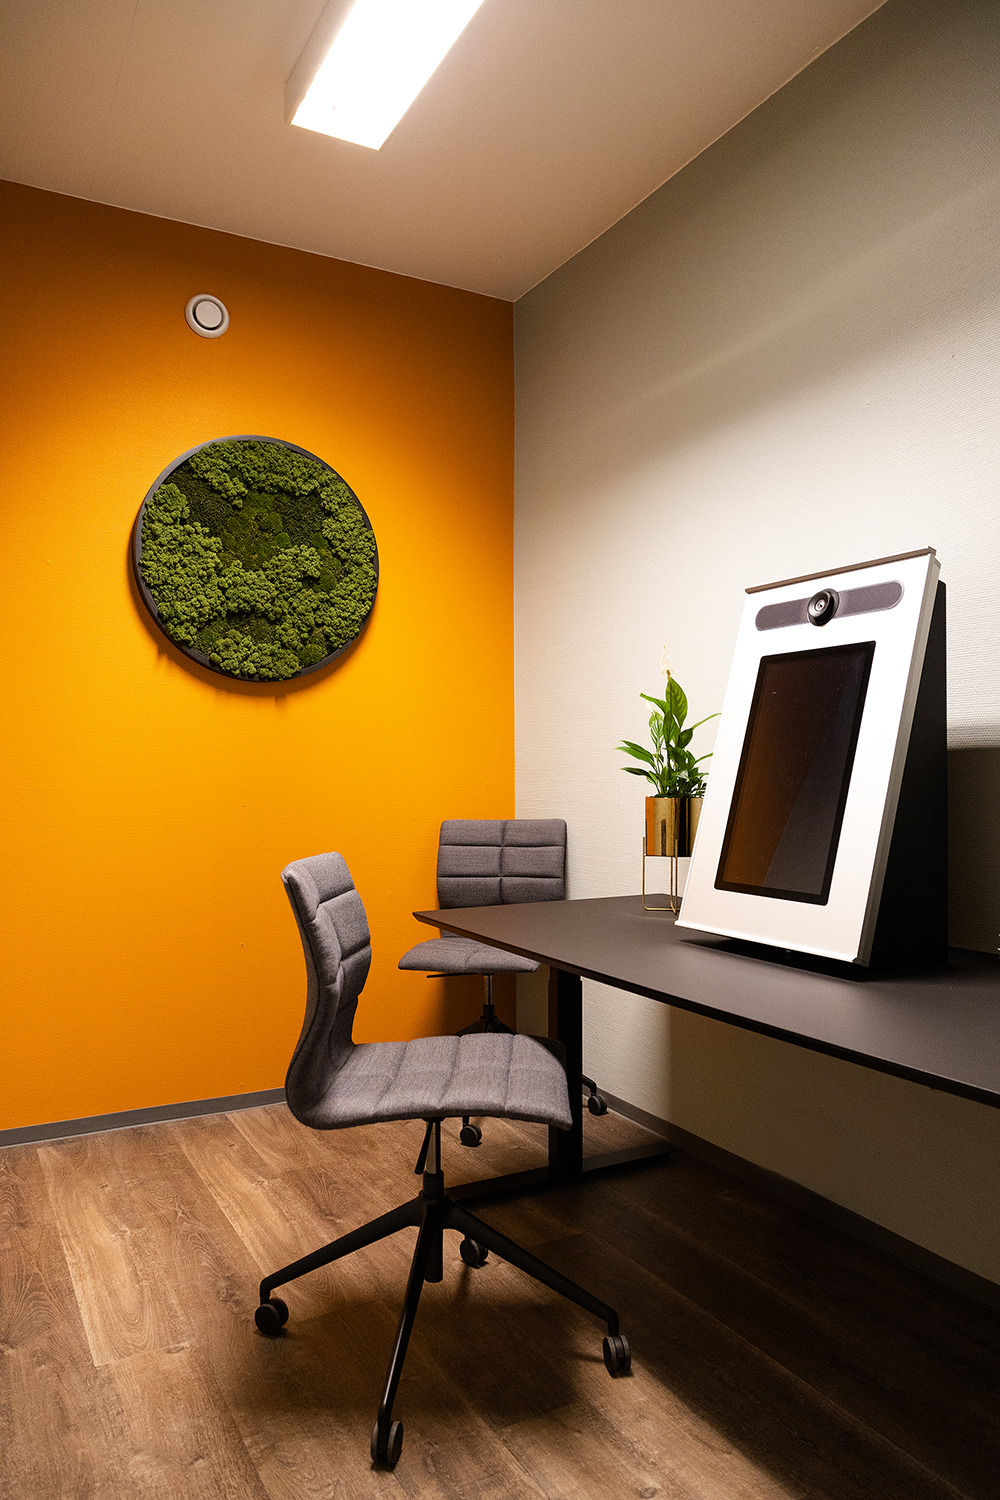 Oversiktsbilde av Norges første digitale innbyggertorg som er en rektangulær skjerm med kamera, plassert på høykant. Det sorte bordet står i god kontrast mot den grå veggen, og den oransje veggen i enden av rommet. På den sistnevnte veggen henger en rundt mosekunst. Rommet har to grå stoler og vi ser en plante.